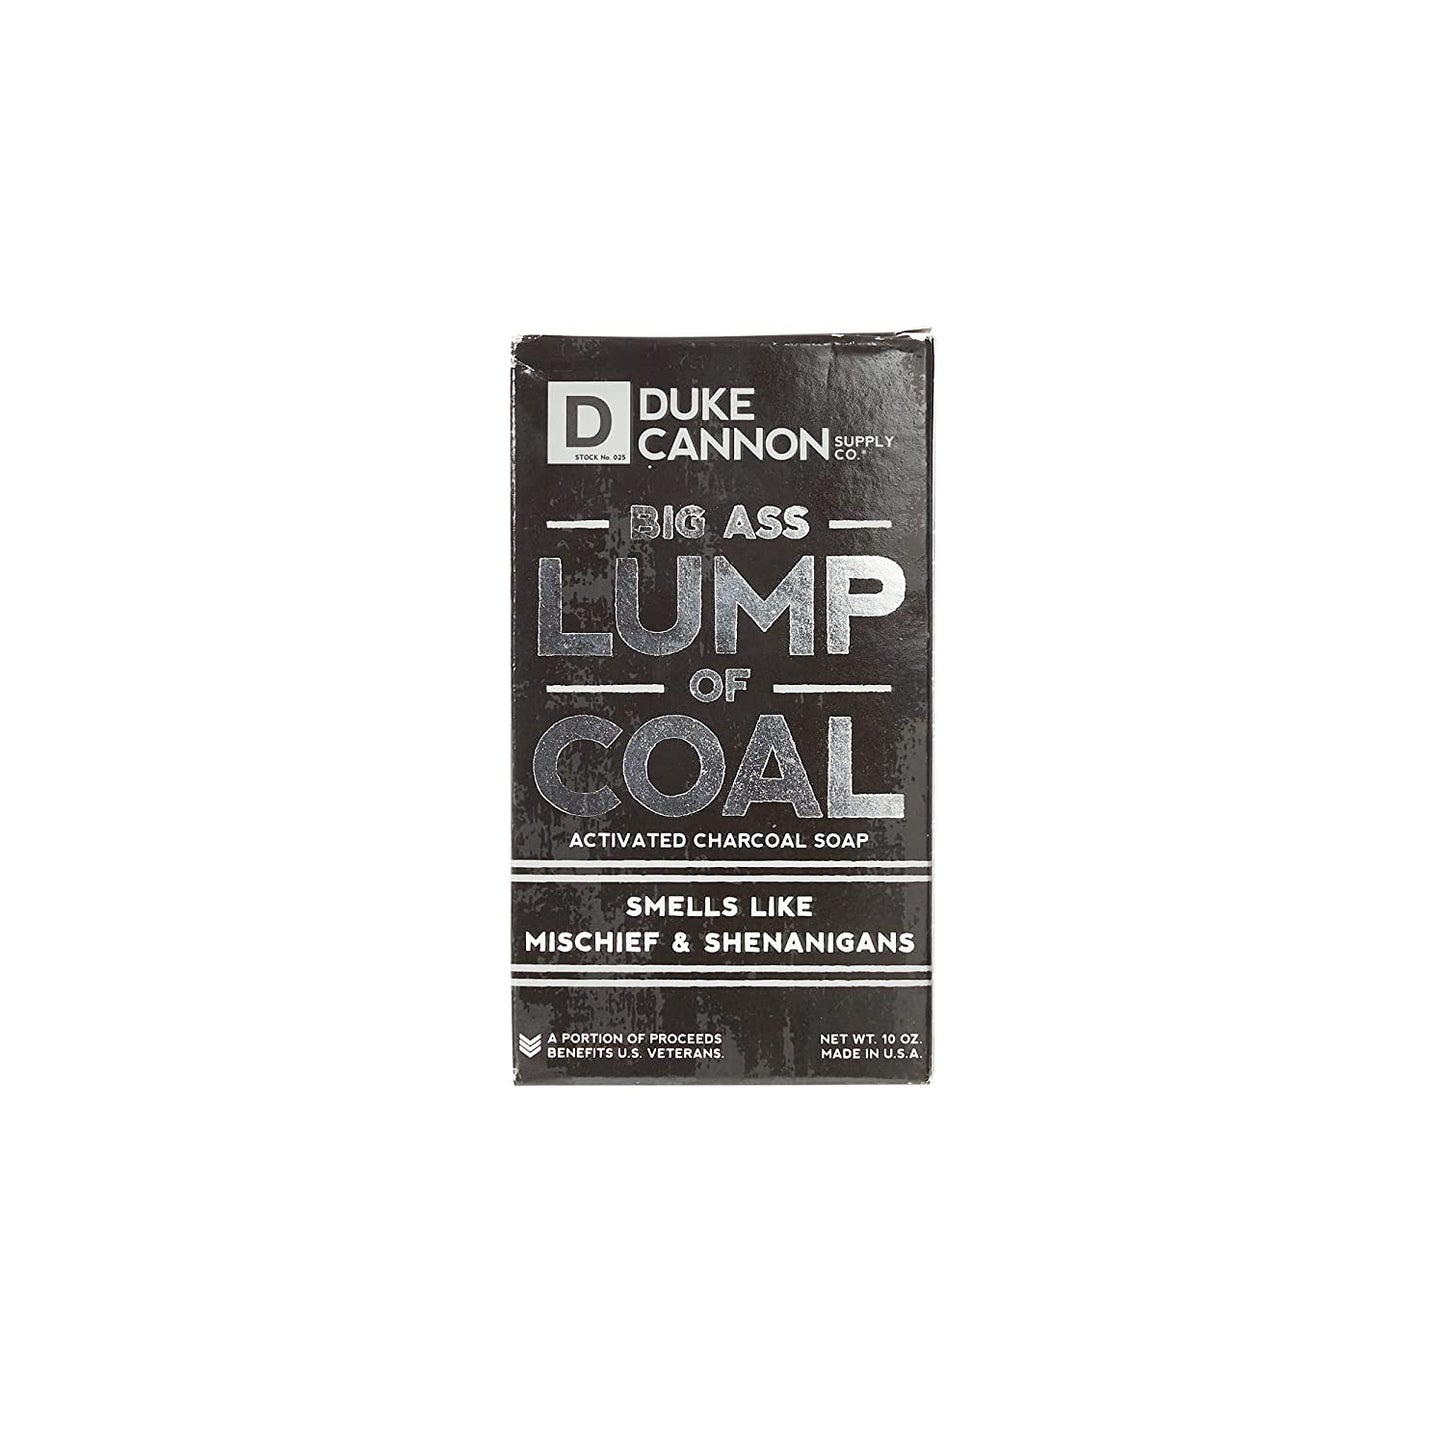 Duke Cannon -  Big Lump of Coal Soap